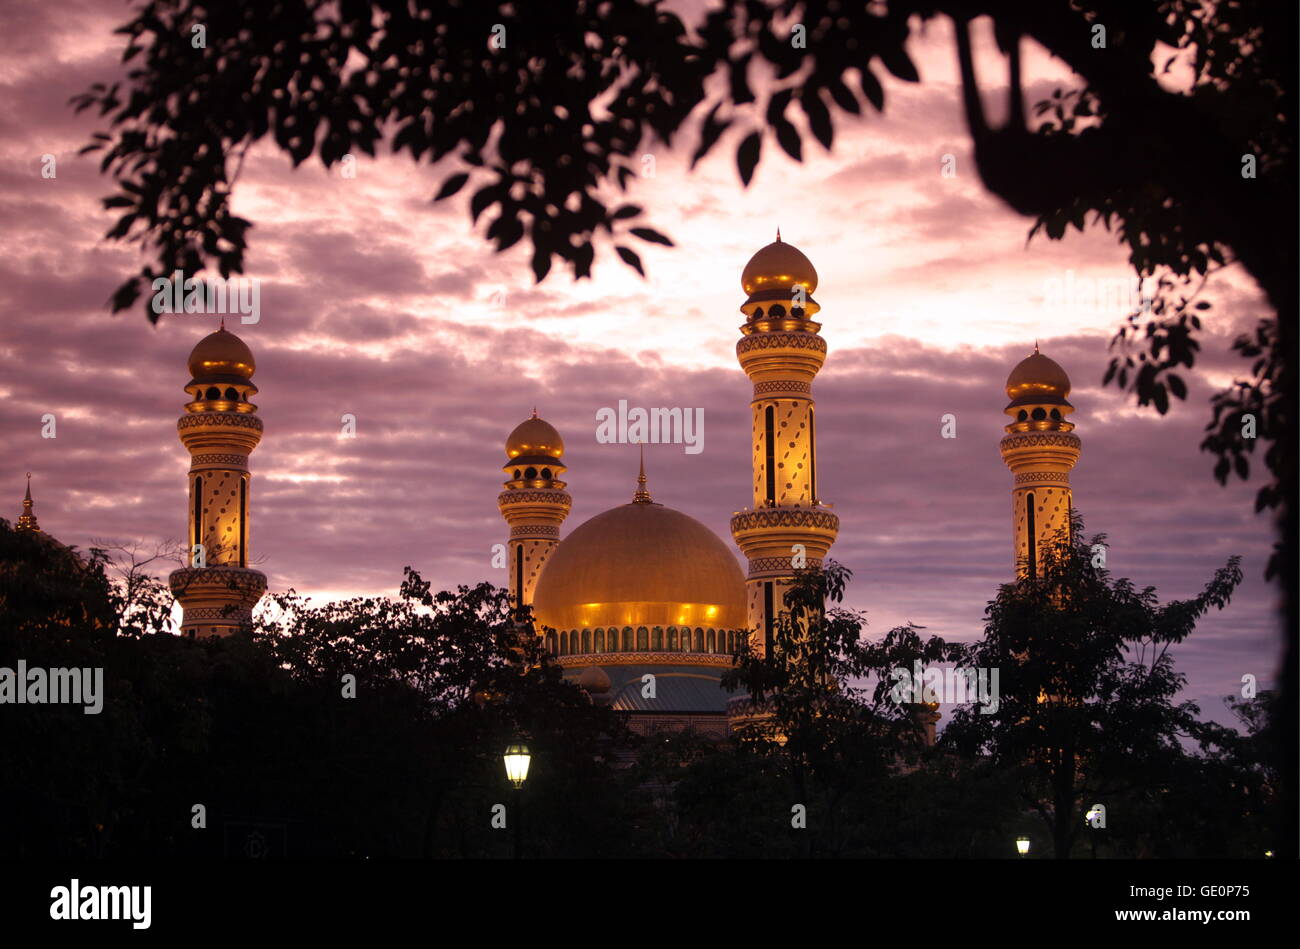 Die Jame Asr Hassanal Bolkiah Moschee im Zentrum der Hauptstadt Bandar Seri Begawan im Koenigreich Brunei Darussalam auf Borneo Foto Stock